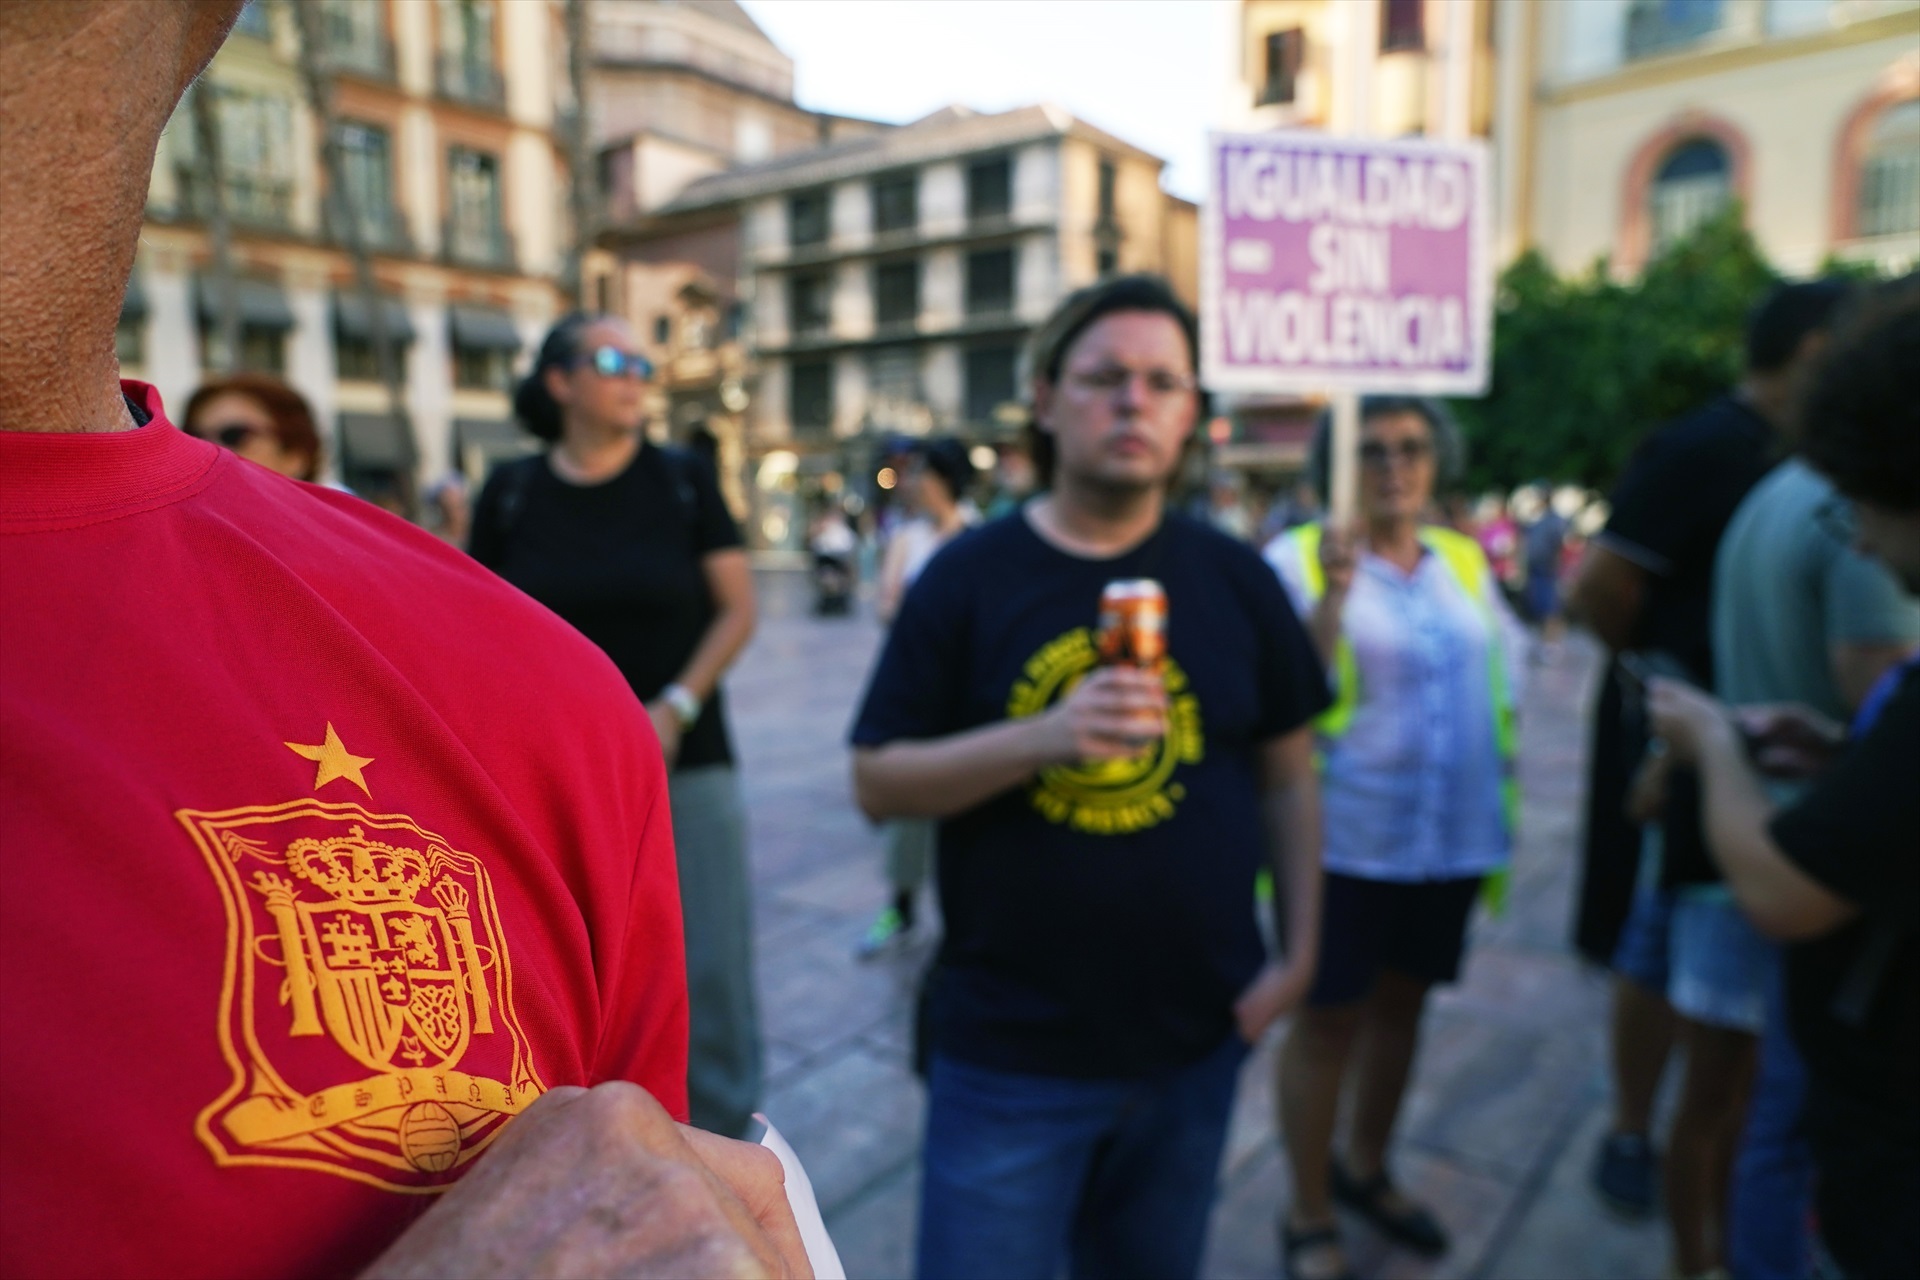 Las futbolistas, Irene Montero y Podemos. El sistema se defiende usando la fuerza bruta, pero pierde